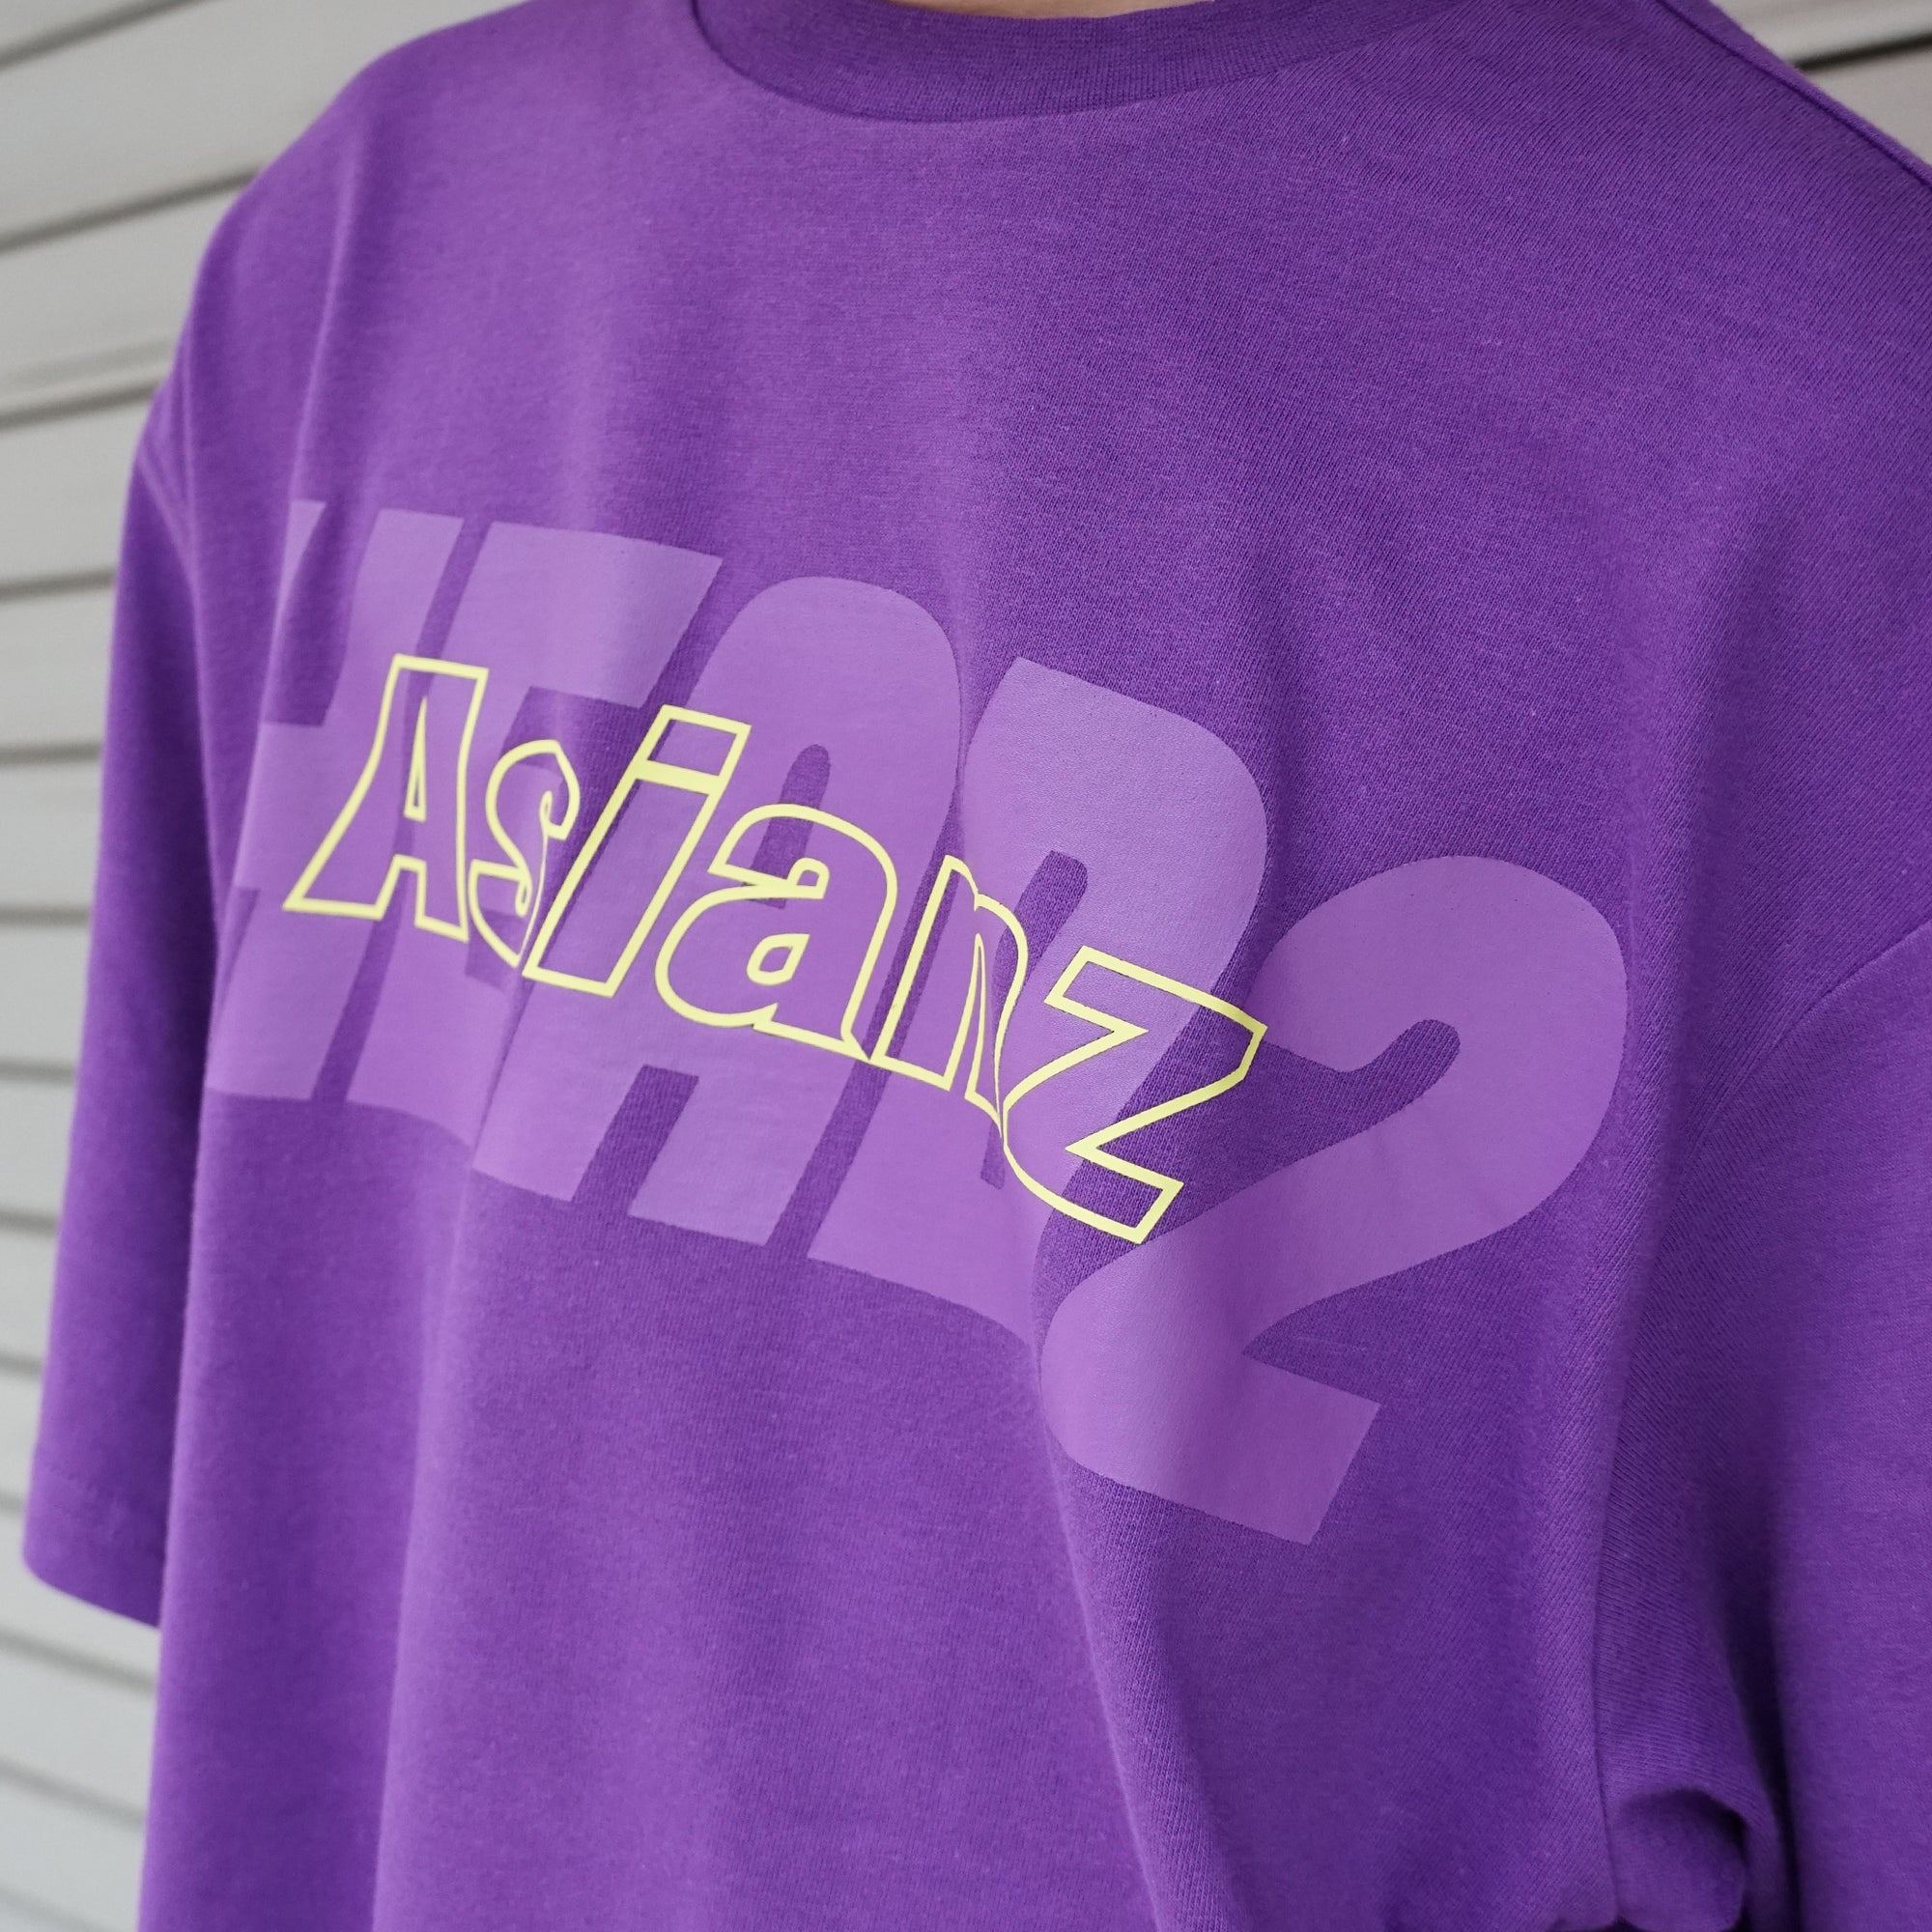 (40%オフ! セール商品)  ASIANZ HEAD2 シャドーロゴ Tシャツ キッズウェアー